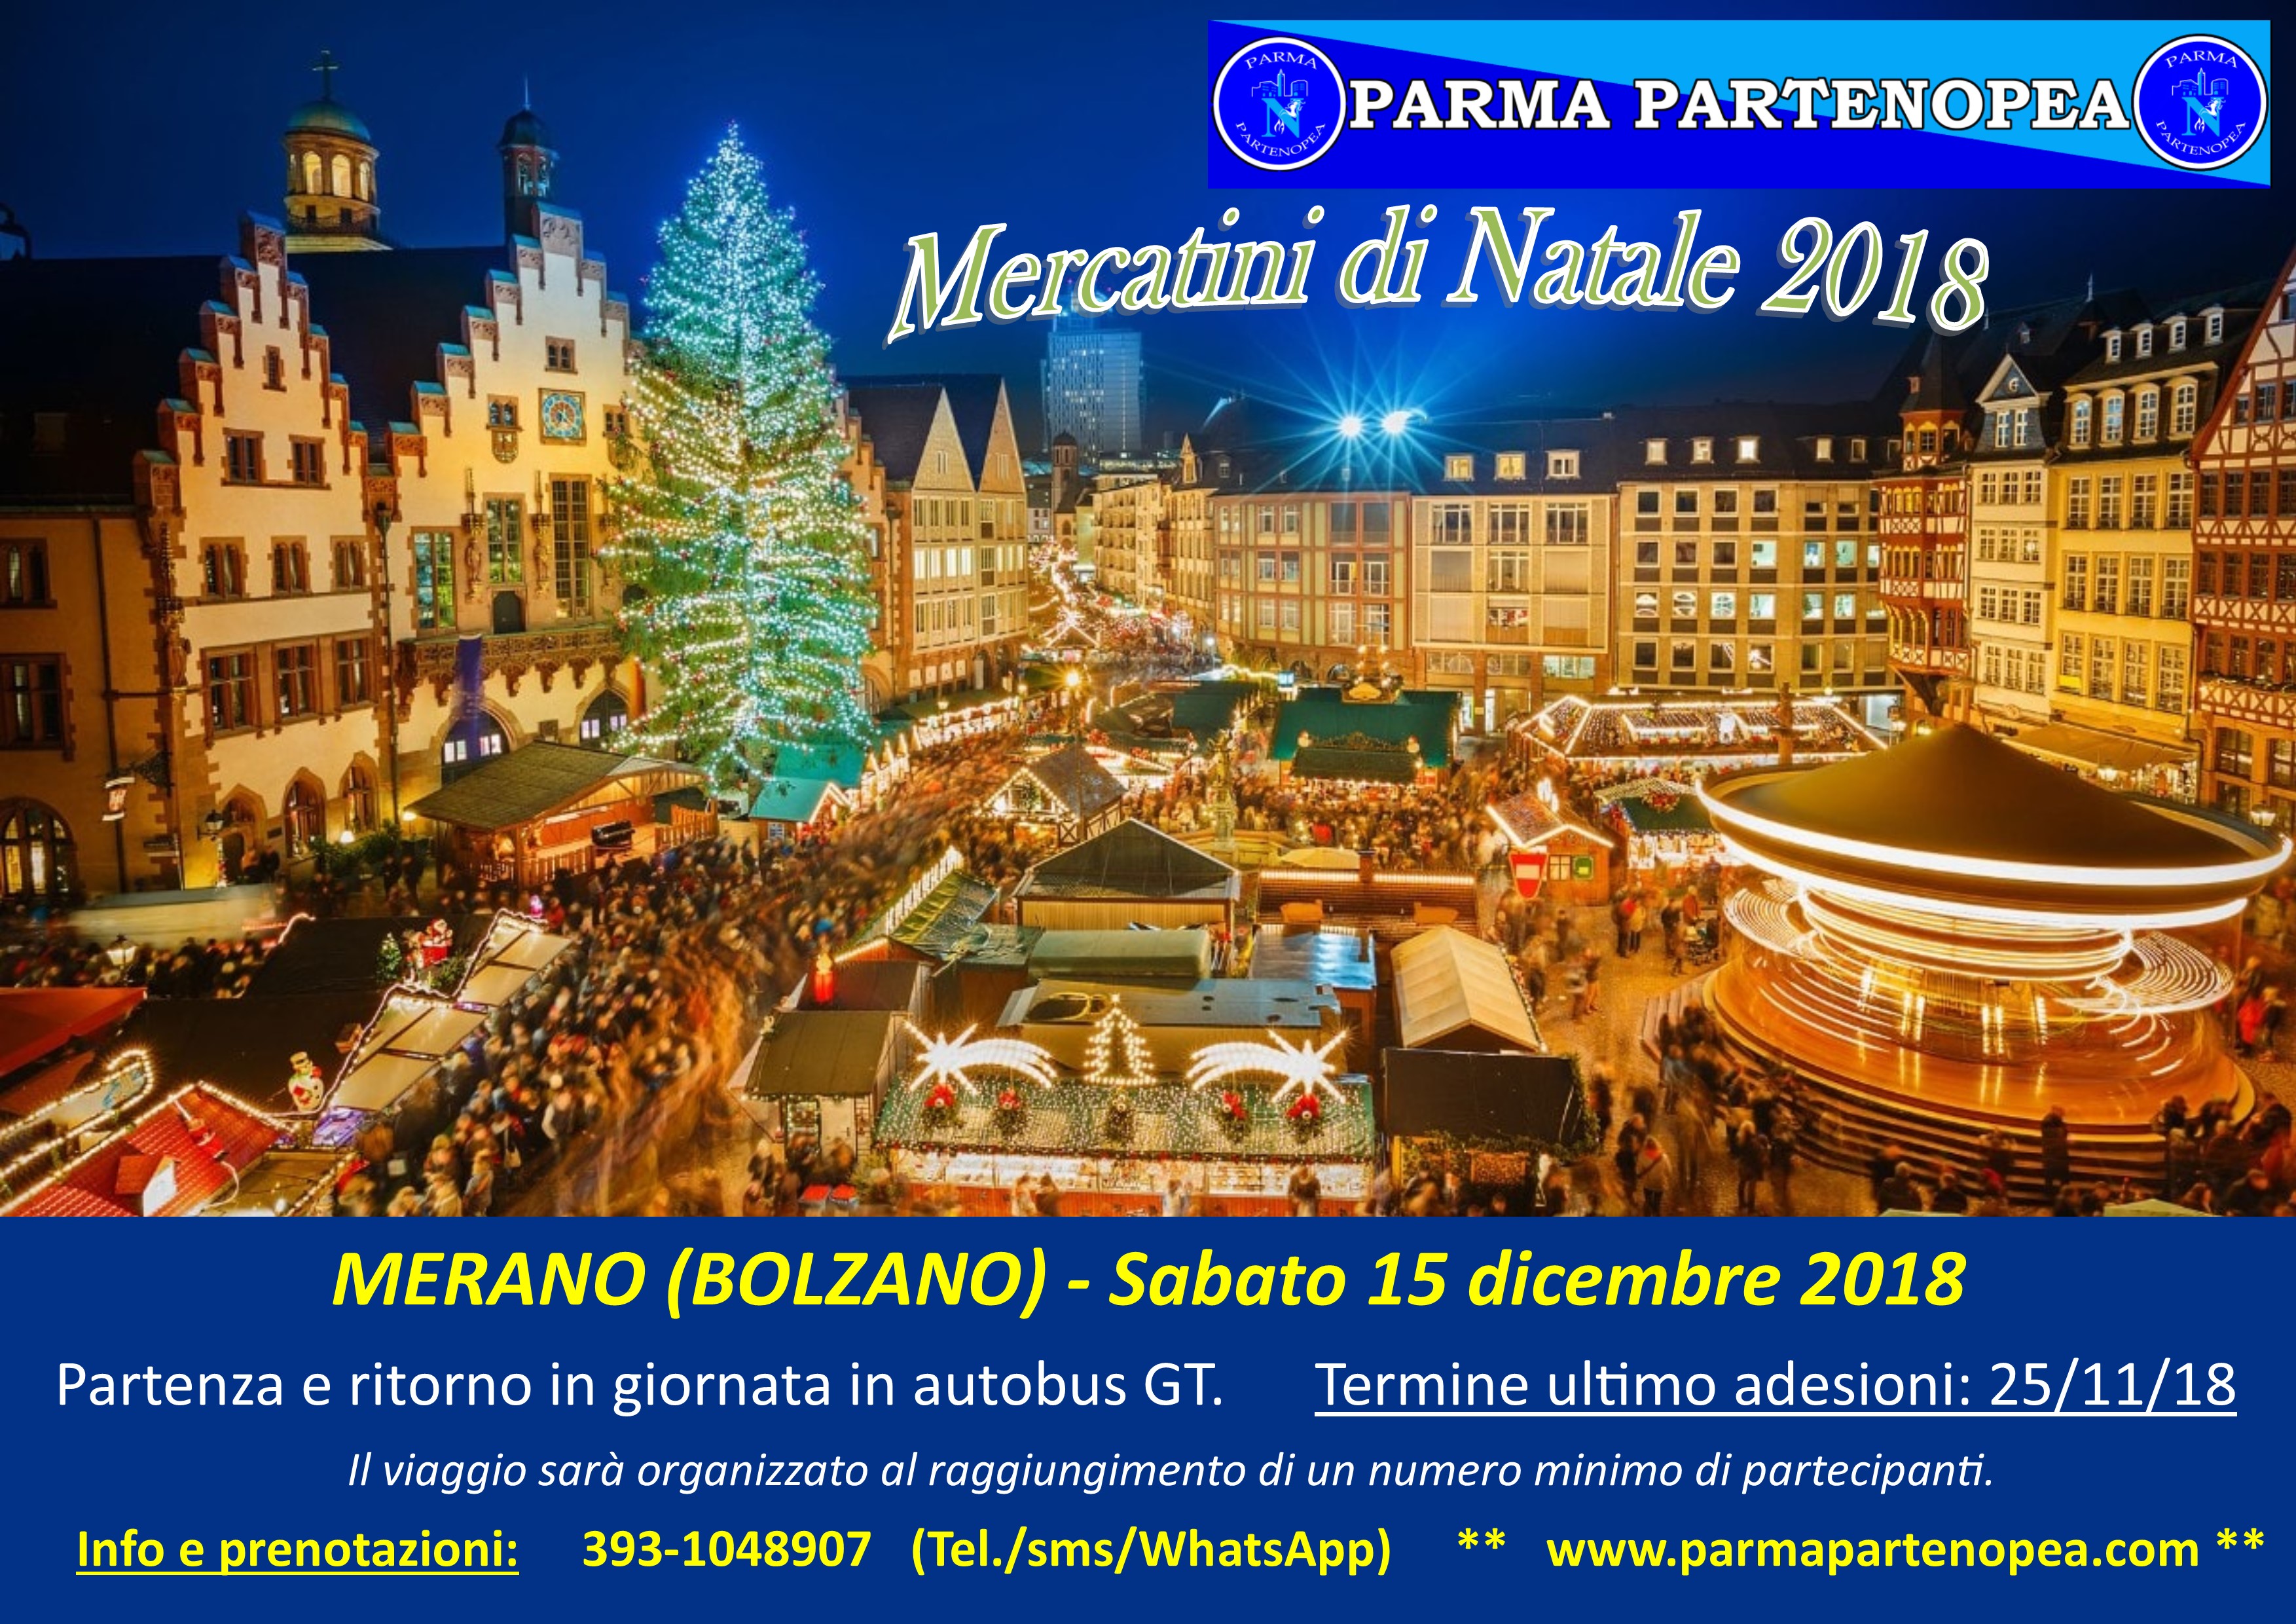 Mercatini Di Natale Merano Foto.Mercatini Di Natale 2018 A Merano Bolzano Con Parma Partenopea Sabato 15 Dicembre 2018 Parma Partenopea